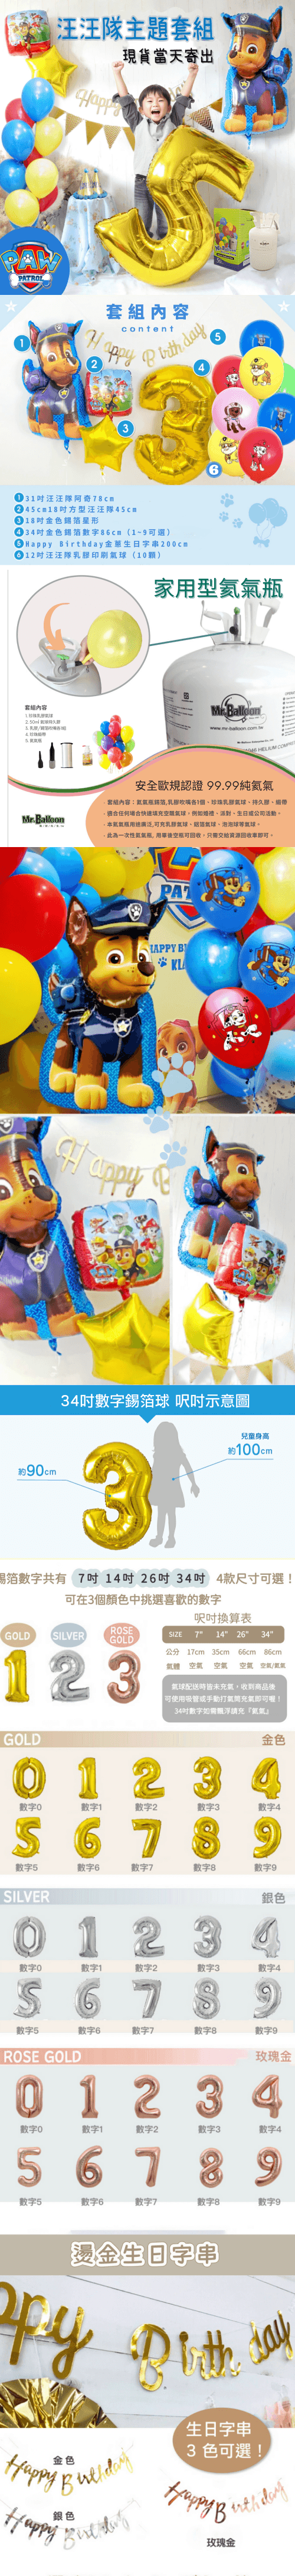 汪汪隊生日氦氣瓶套組 - MR.Balloon 氣球先生派對商城